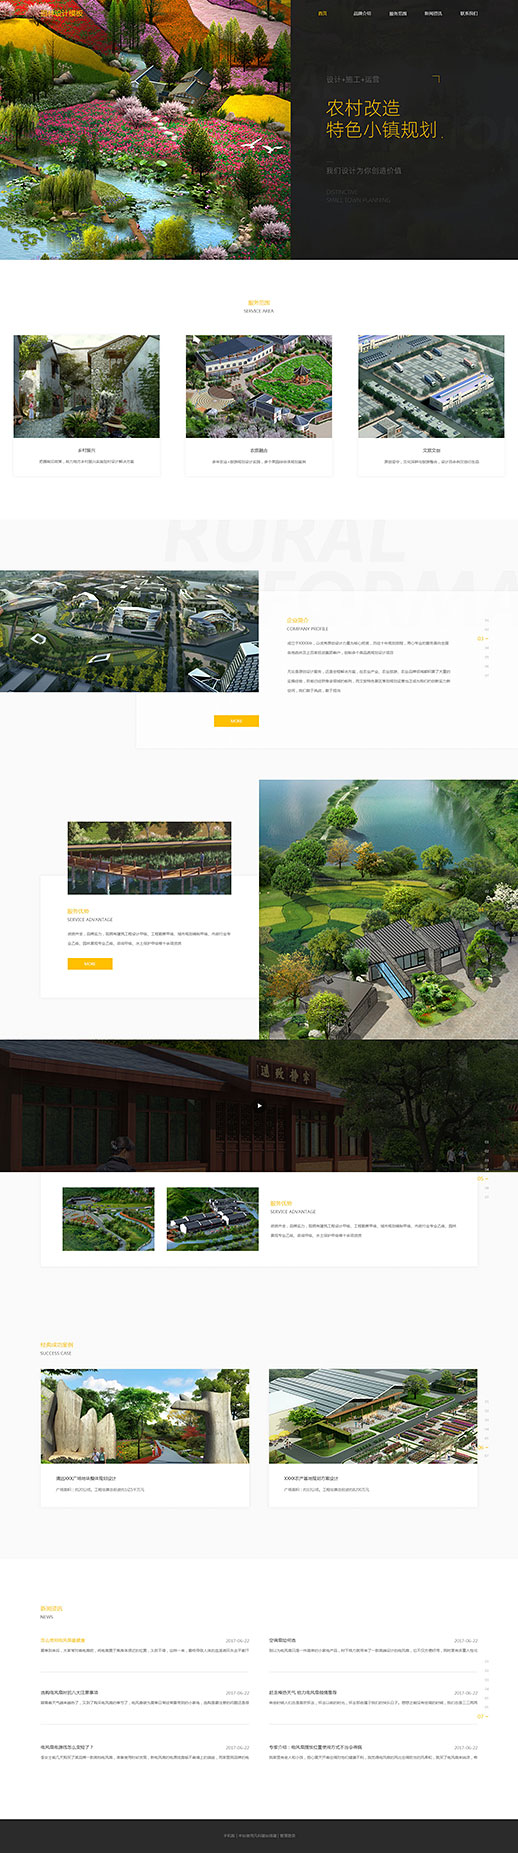 精品园林设计服务网站模板